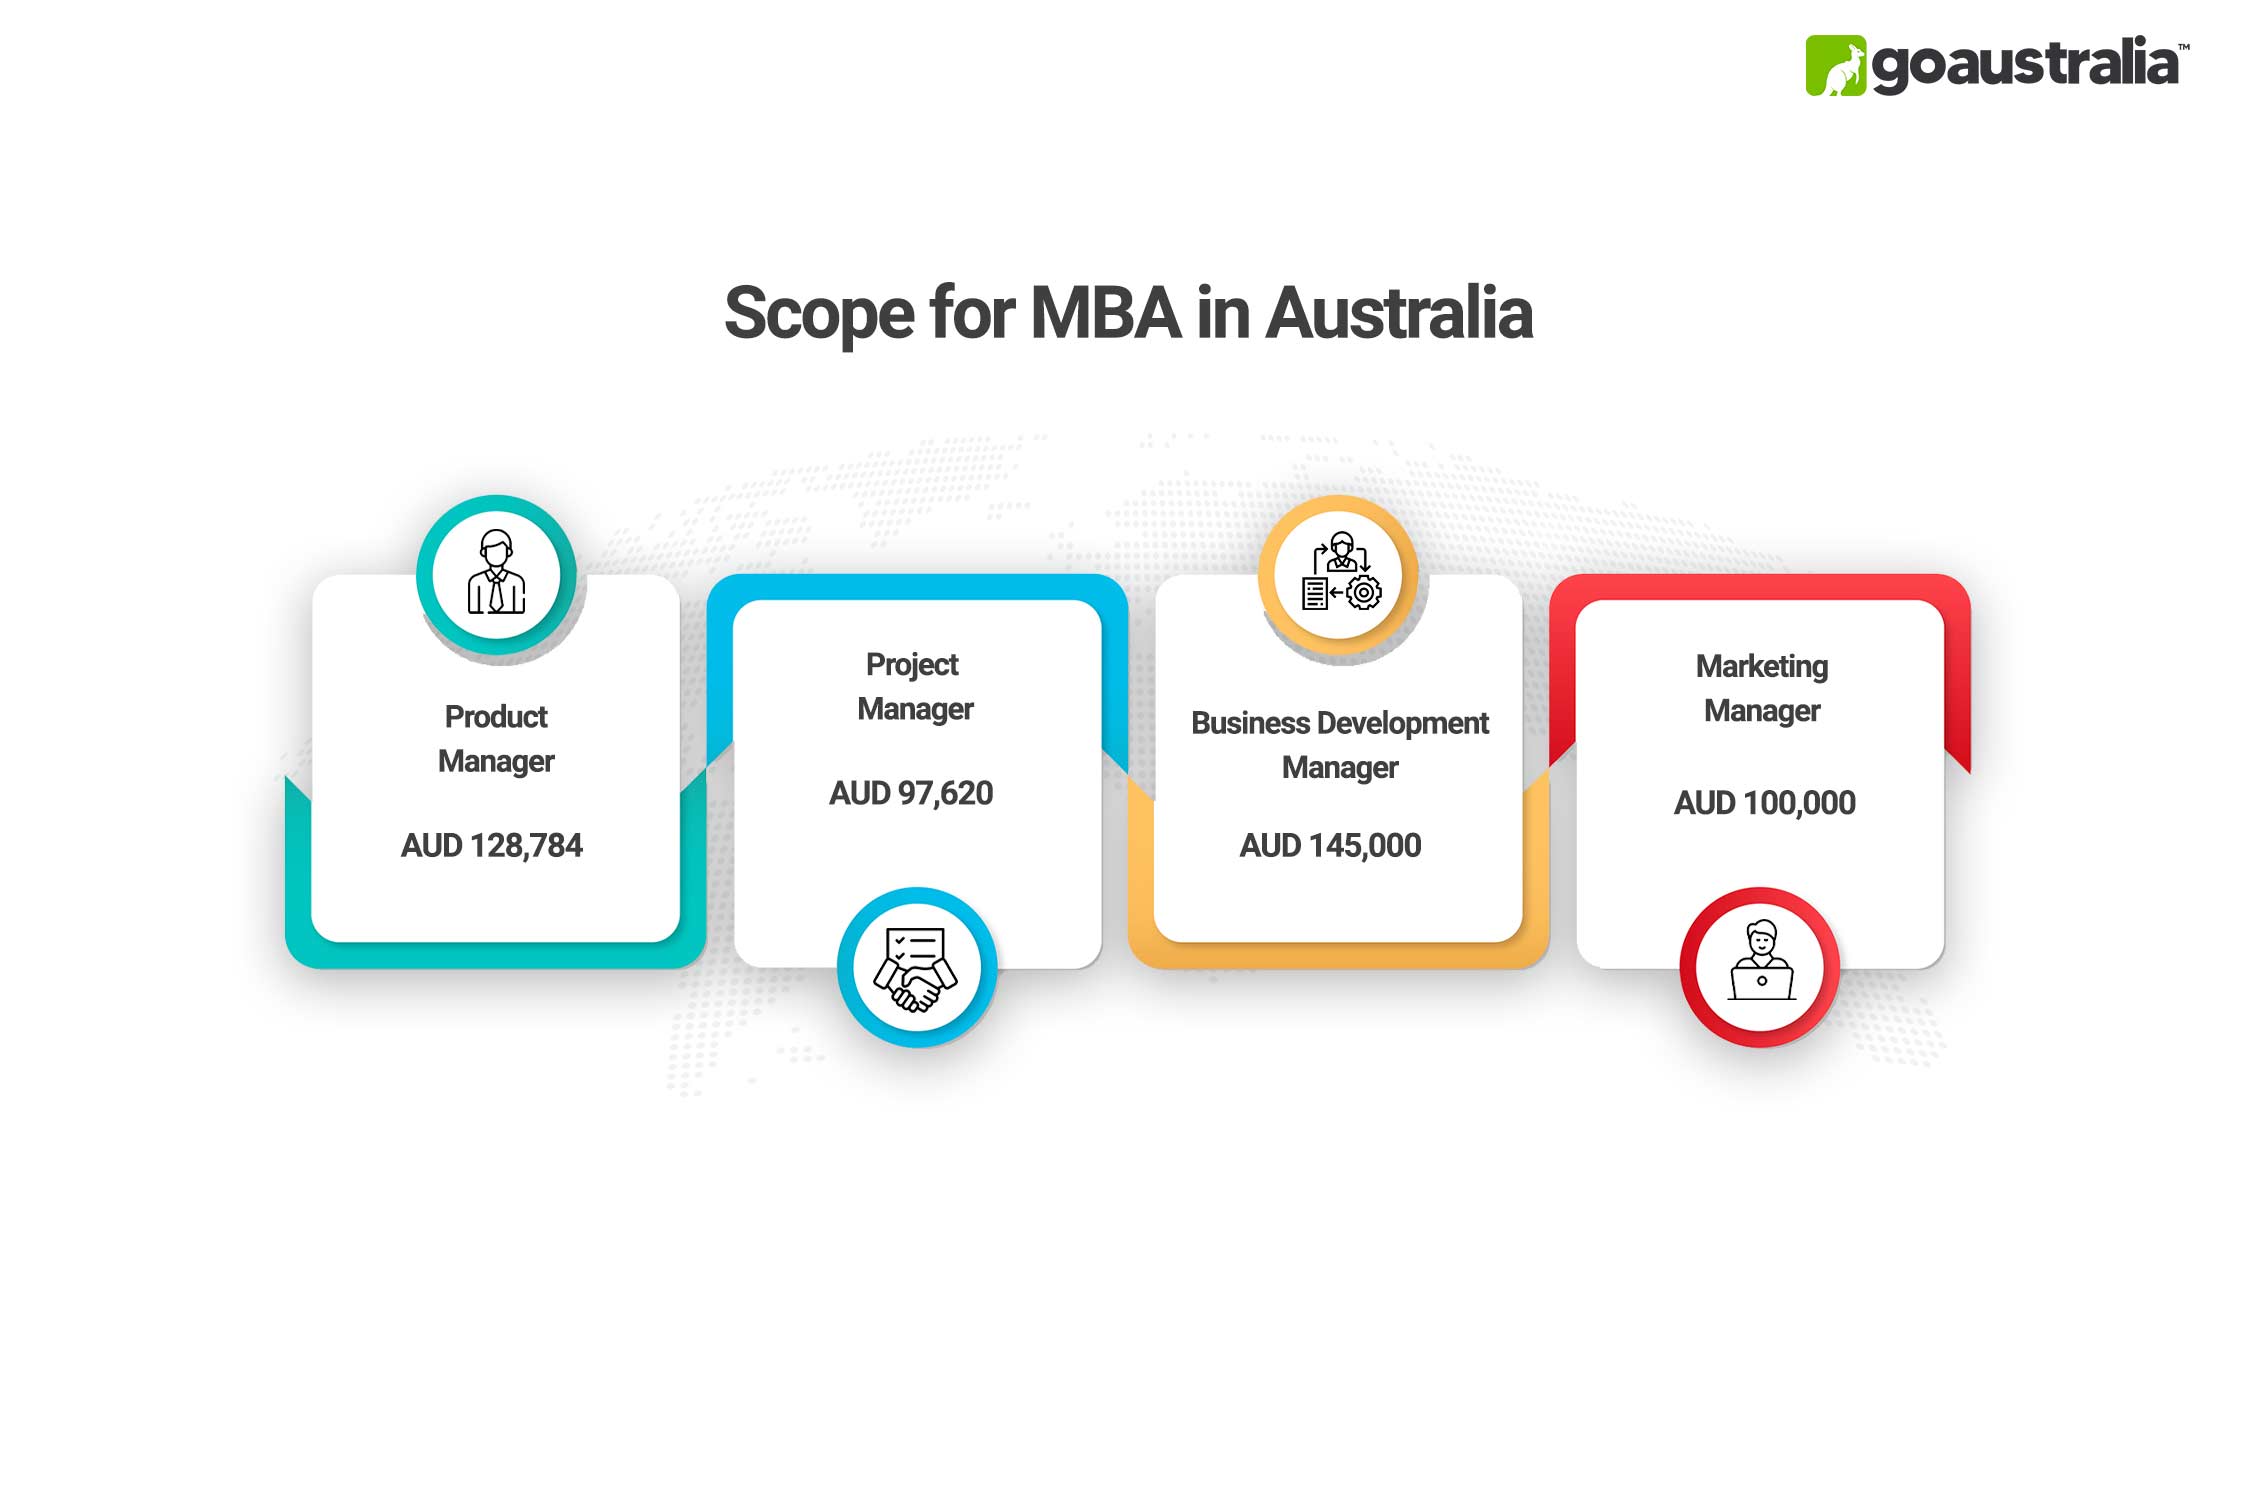 MBA in Australia Scope